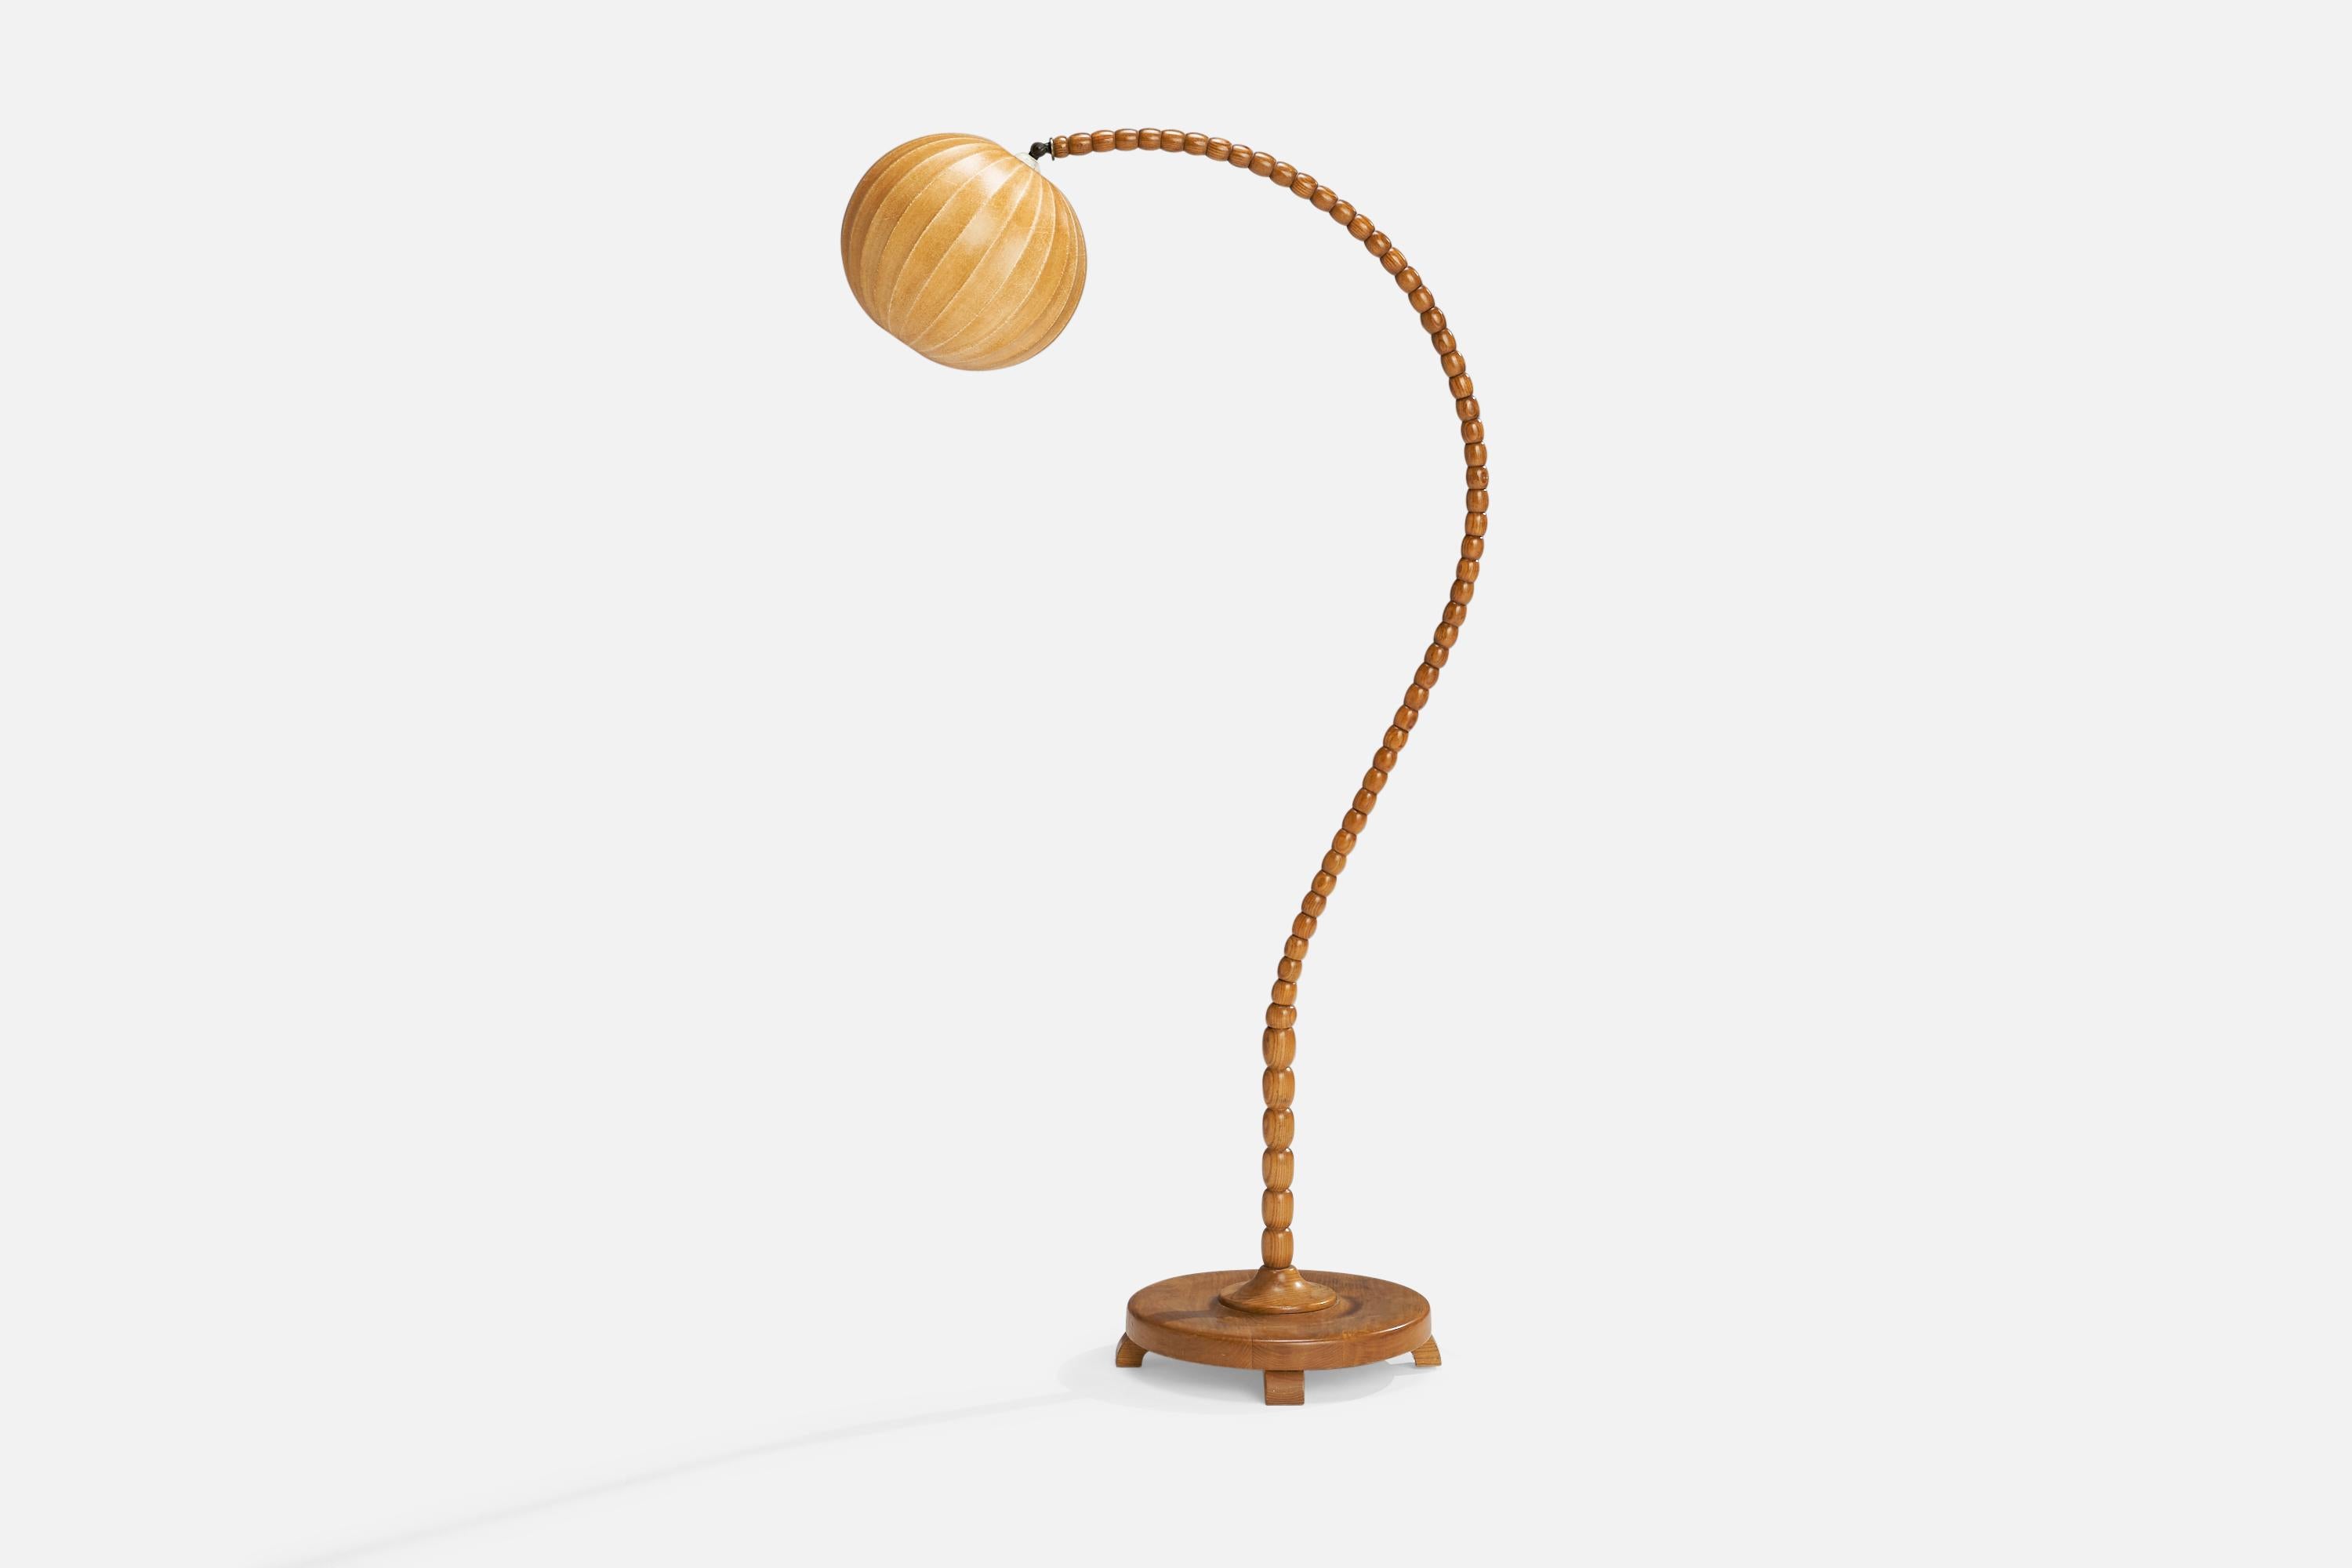 Stehlampe aus Kiefer und beigefarbener gewachster Baumwolle, entworfen und hergestellt in Schweden, 1940er Jahre.

Gesamtabmessungen (Zoll): 59,5